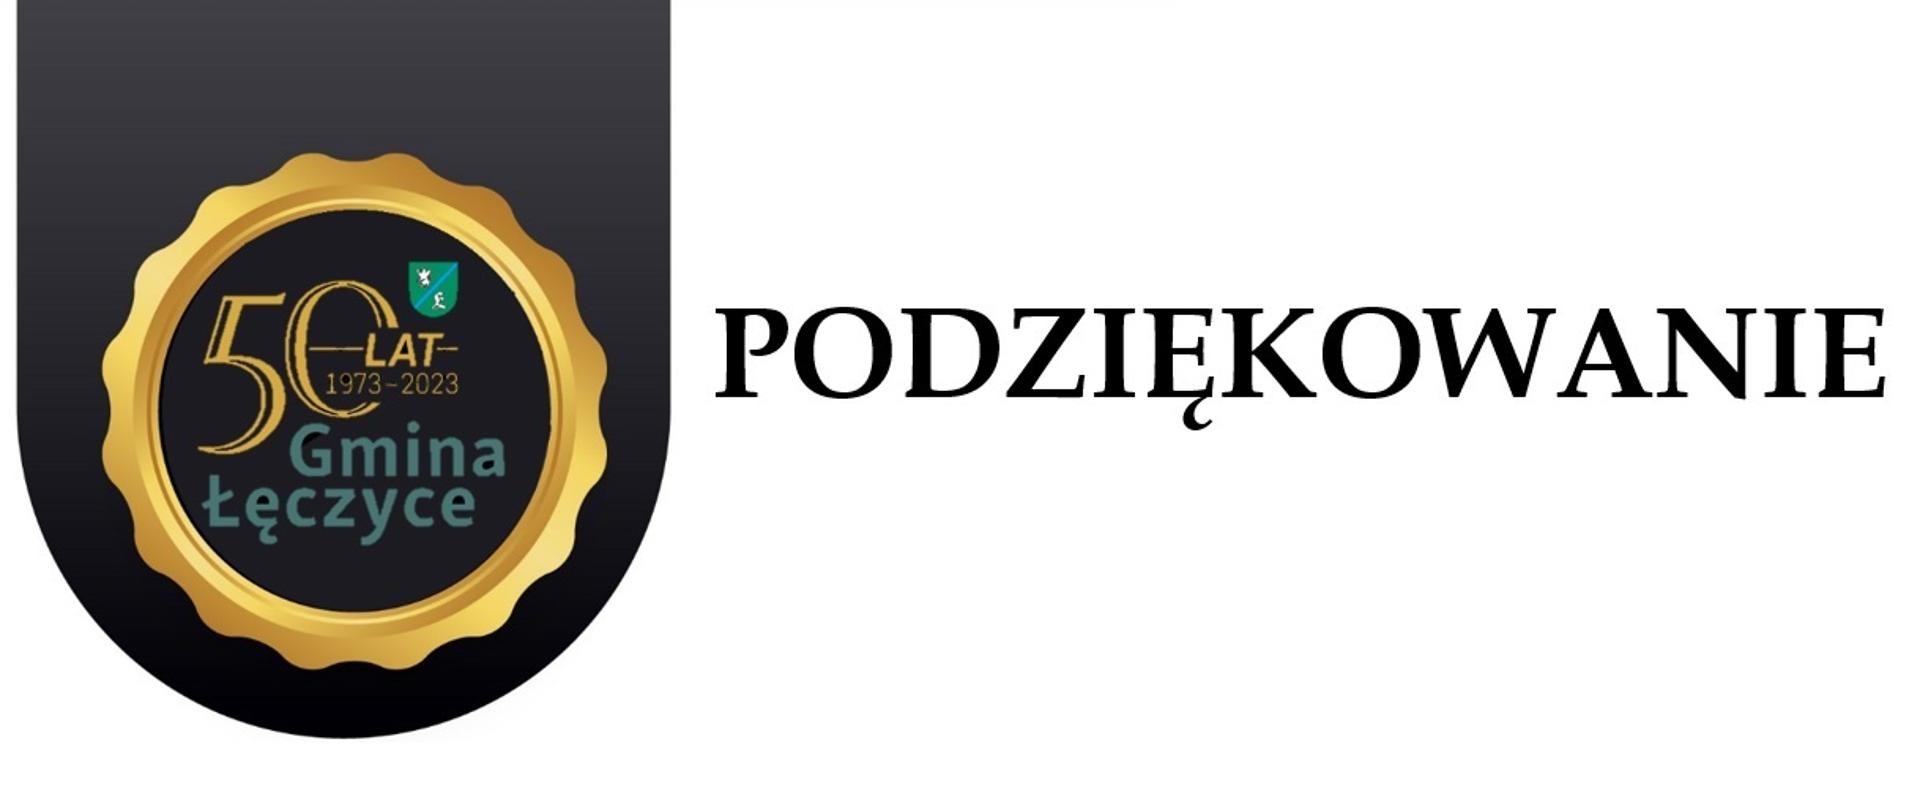 Logo 50 lat 1973-2023 Gmina Łęczyce w falowanym okręgu, obok napis podziękowanie